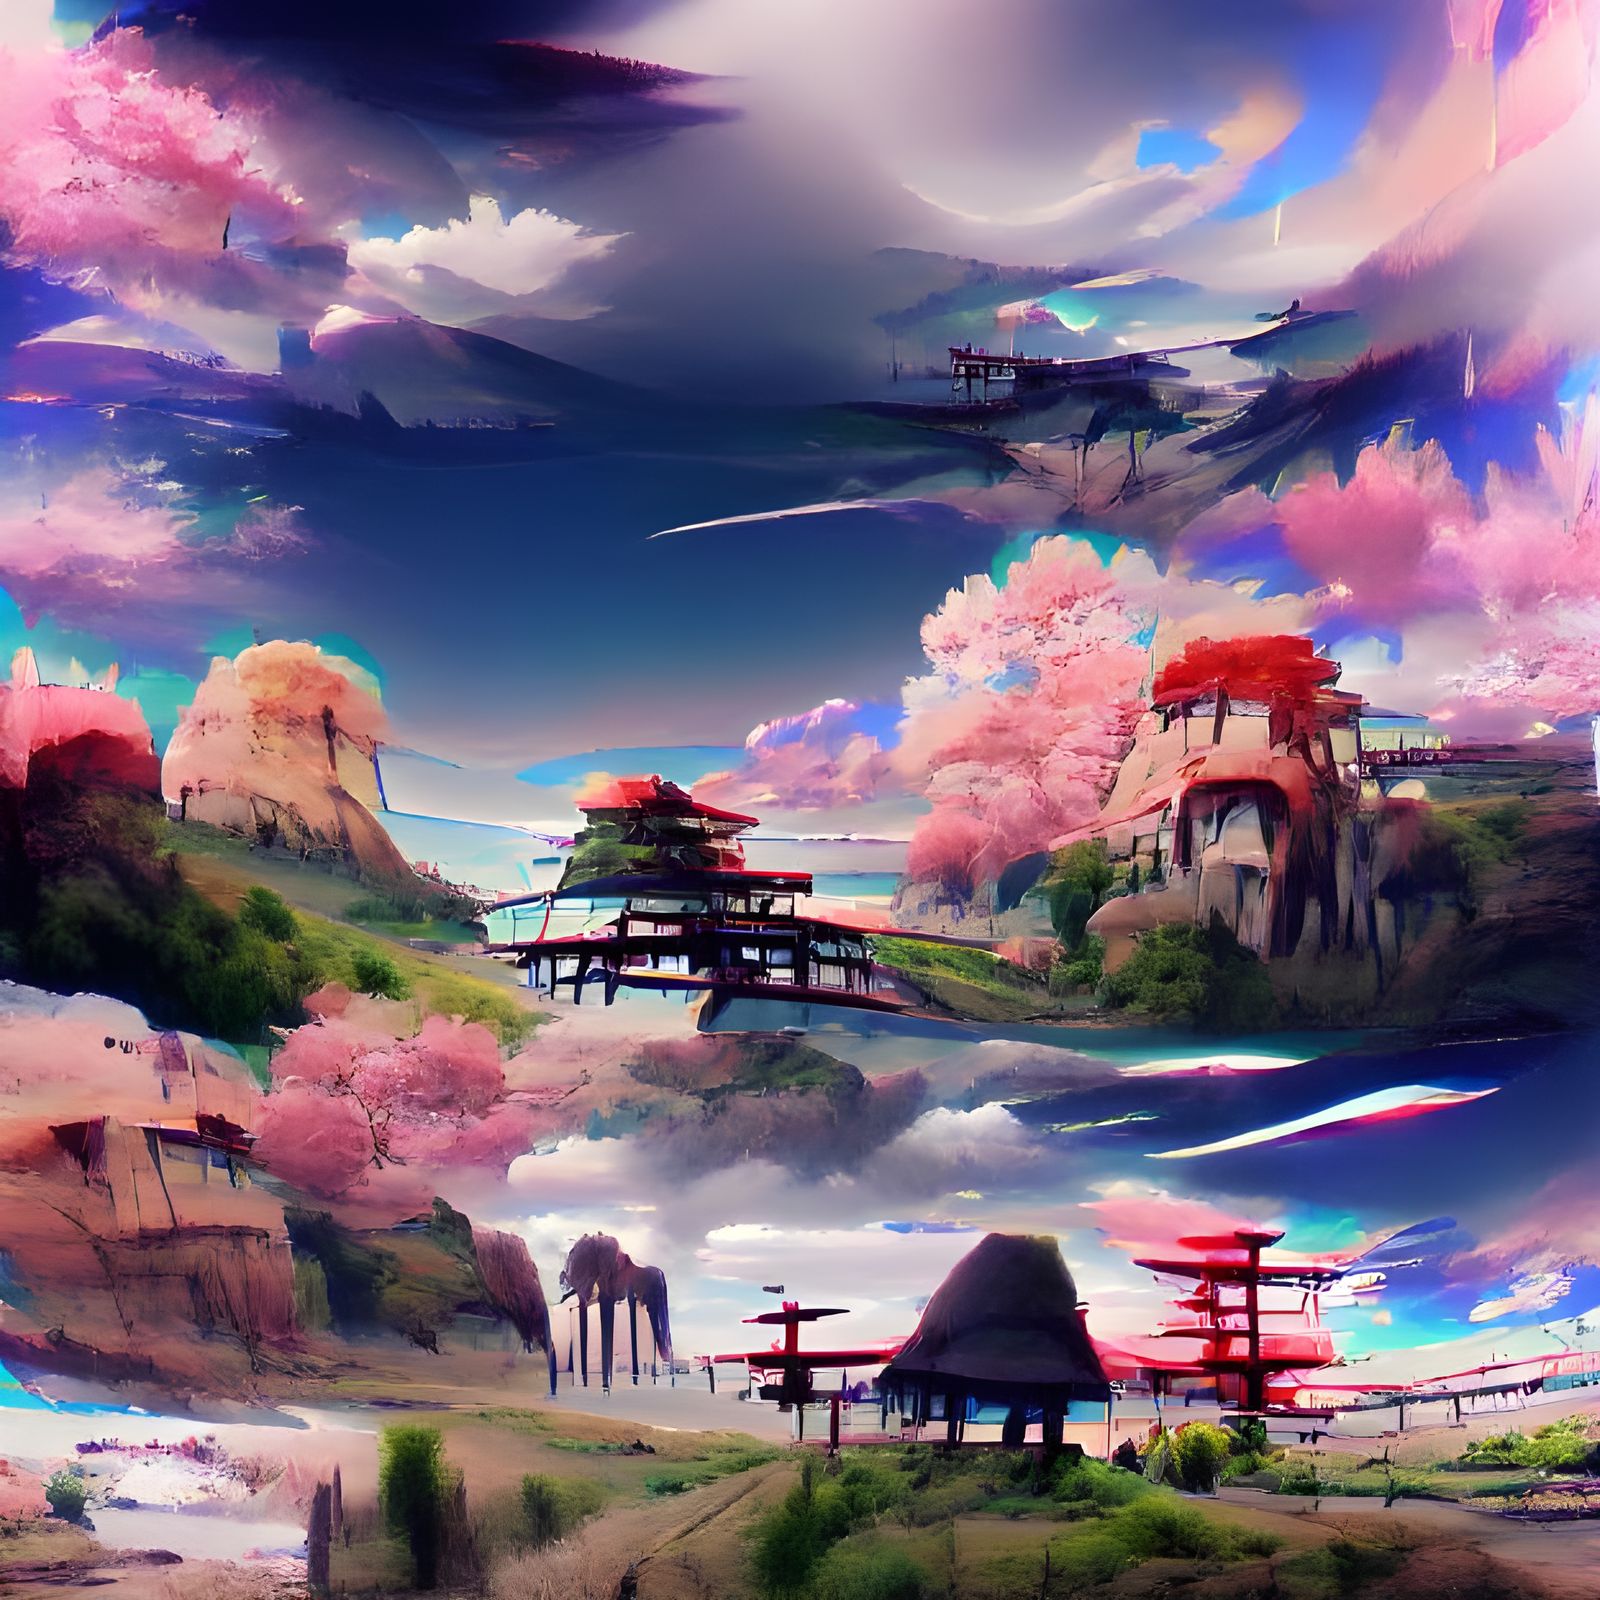 Anime: Nếu bạn đam mê thế giới của anime, đây là một hình ảnh đáng xem. Những nhân vật đầy màu sắc và các trận chiến hấp dẫn sẽ đưa bạn vào một thế giới hoàn toàn mới. Hãy đắm chìm vào câu chuyện và cảm nhận mọi cảm xúc mà anime mang lại.